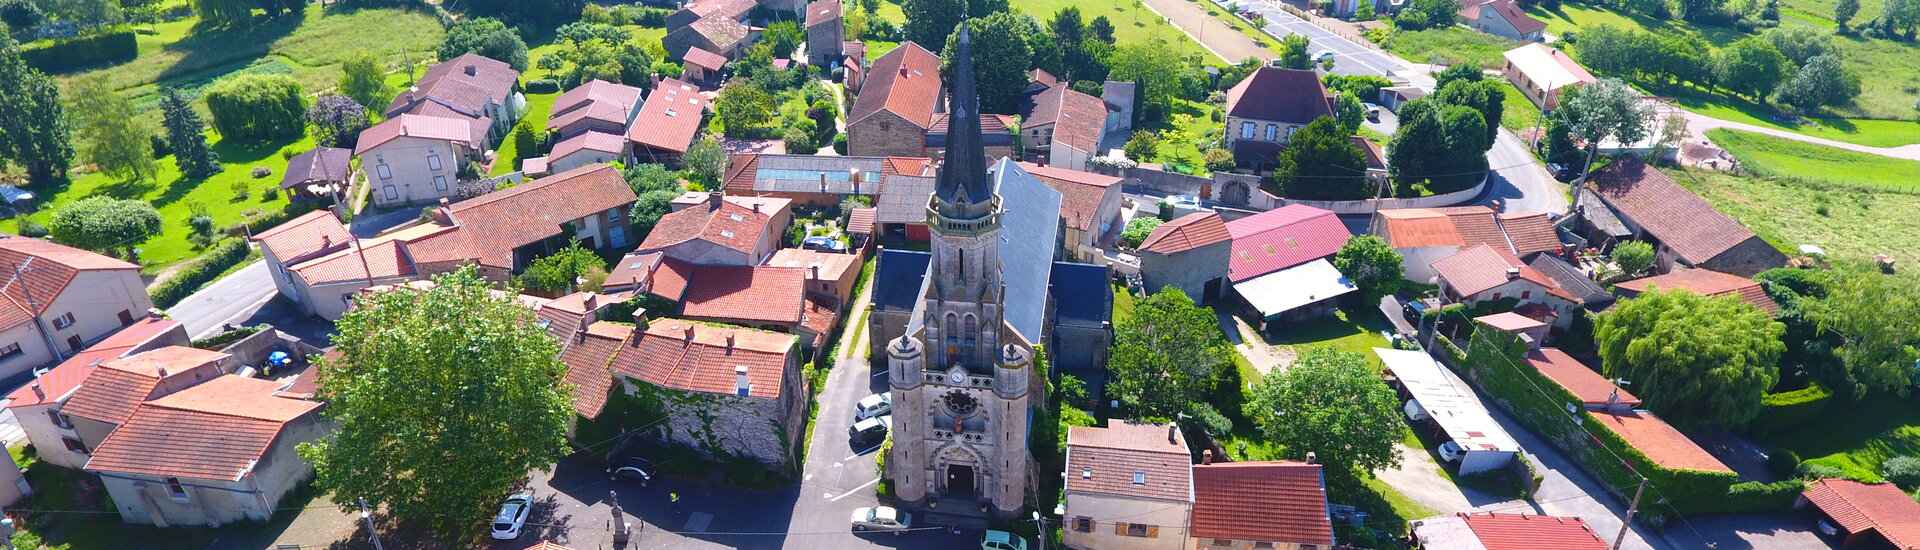 Histoire Patrimoine Teilhède Commune Mairie Auvergne